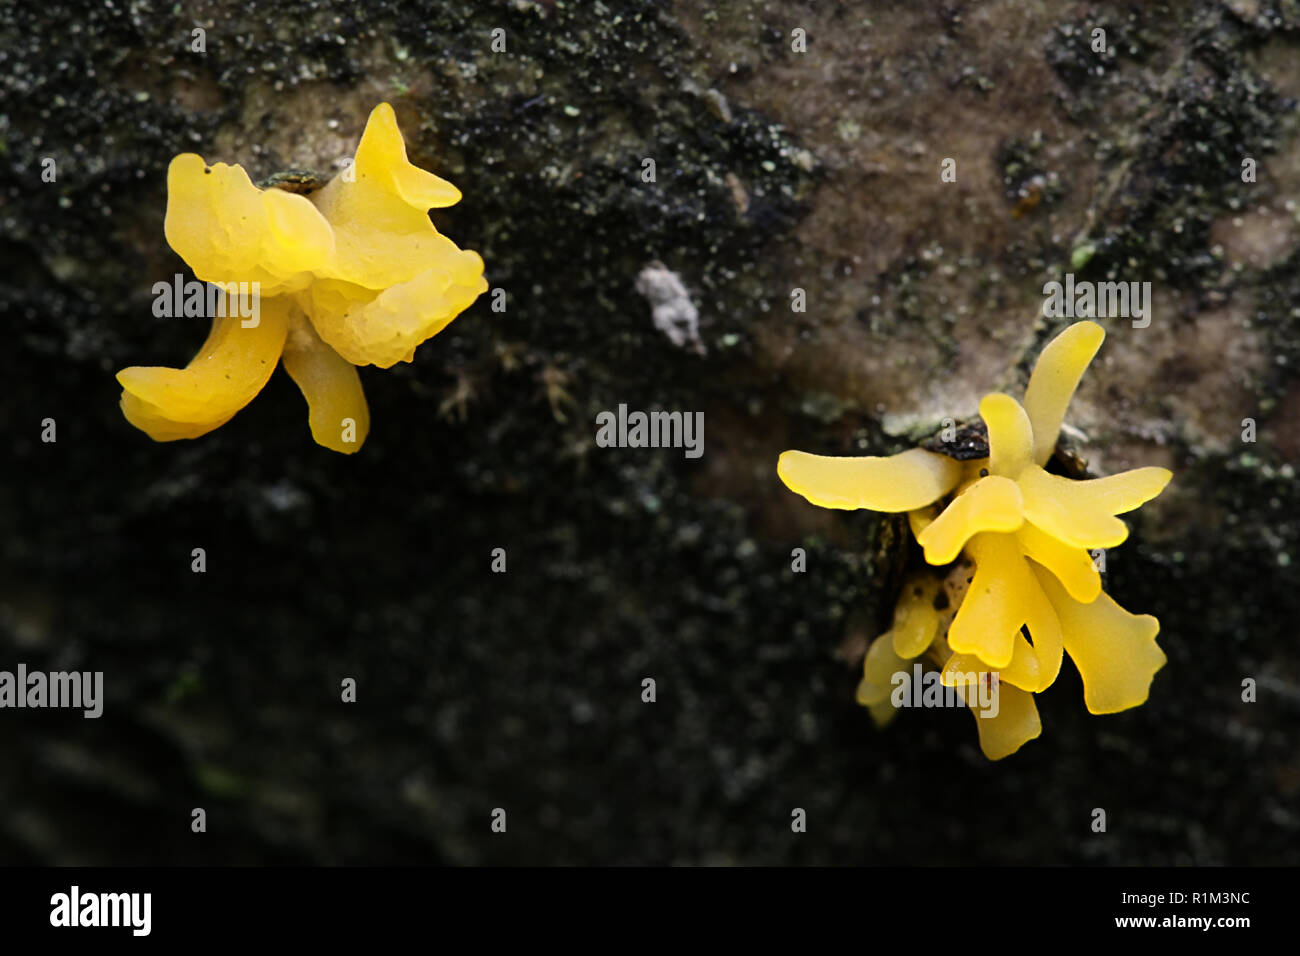 Small stagshorn jelly fungus, Calocera cornea Stock Photo